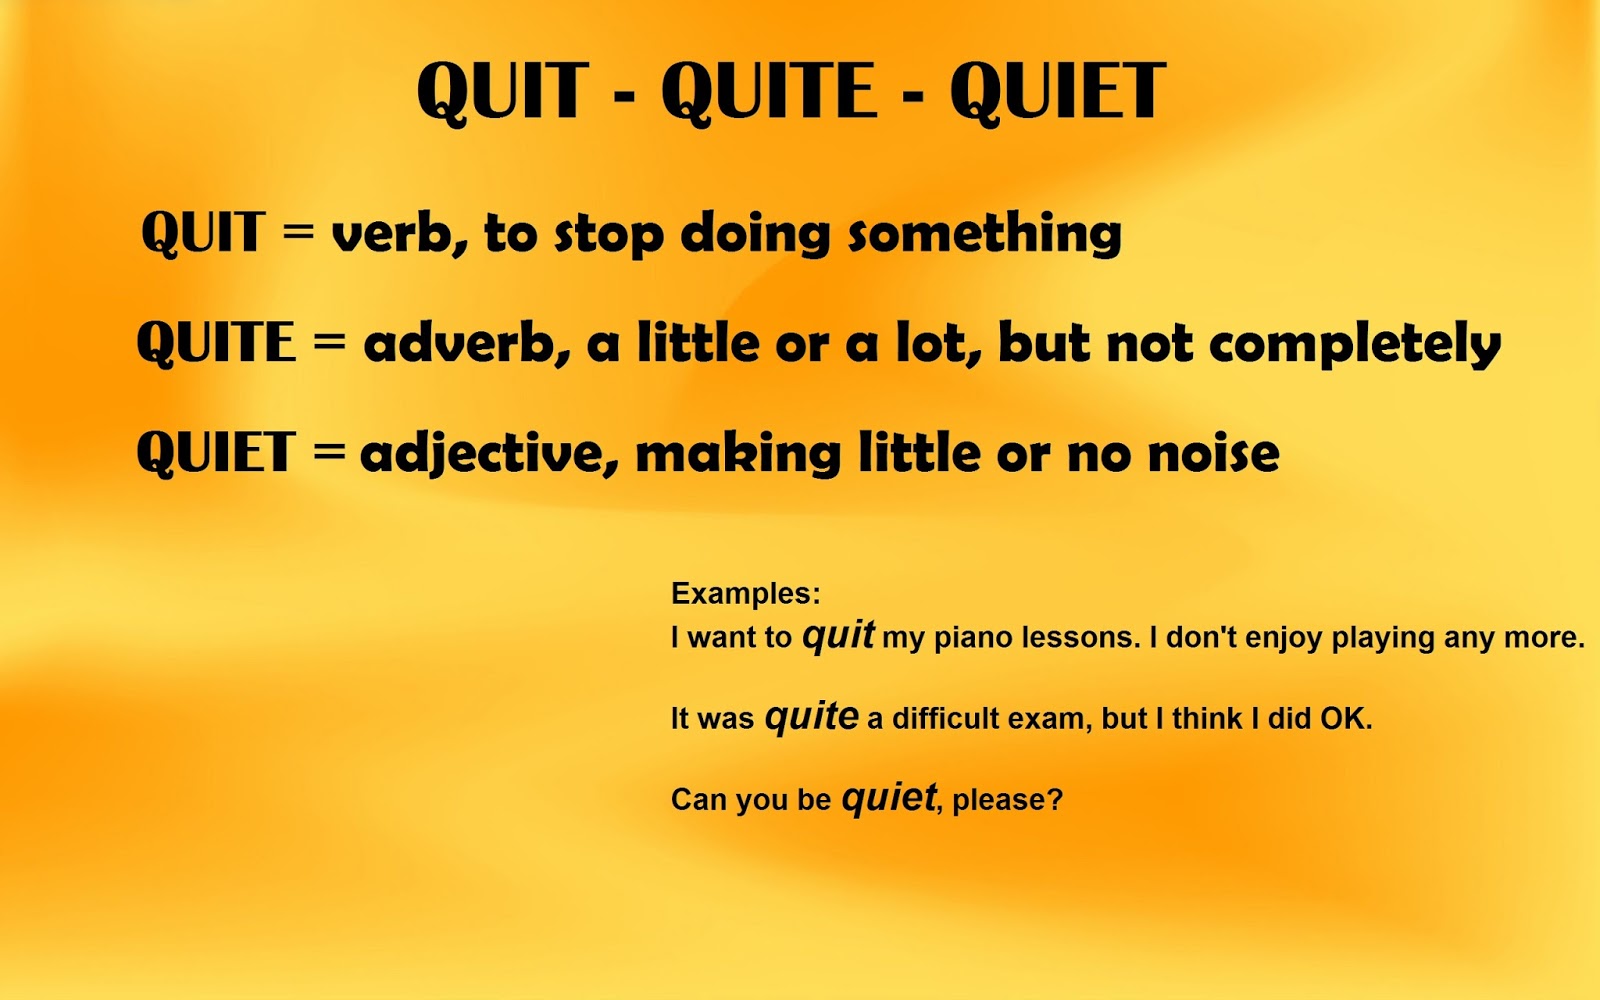 Quiet quitting. Quite.